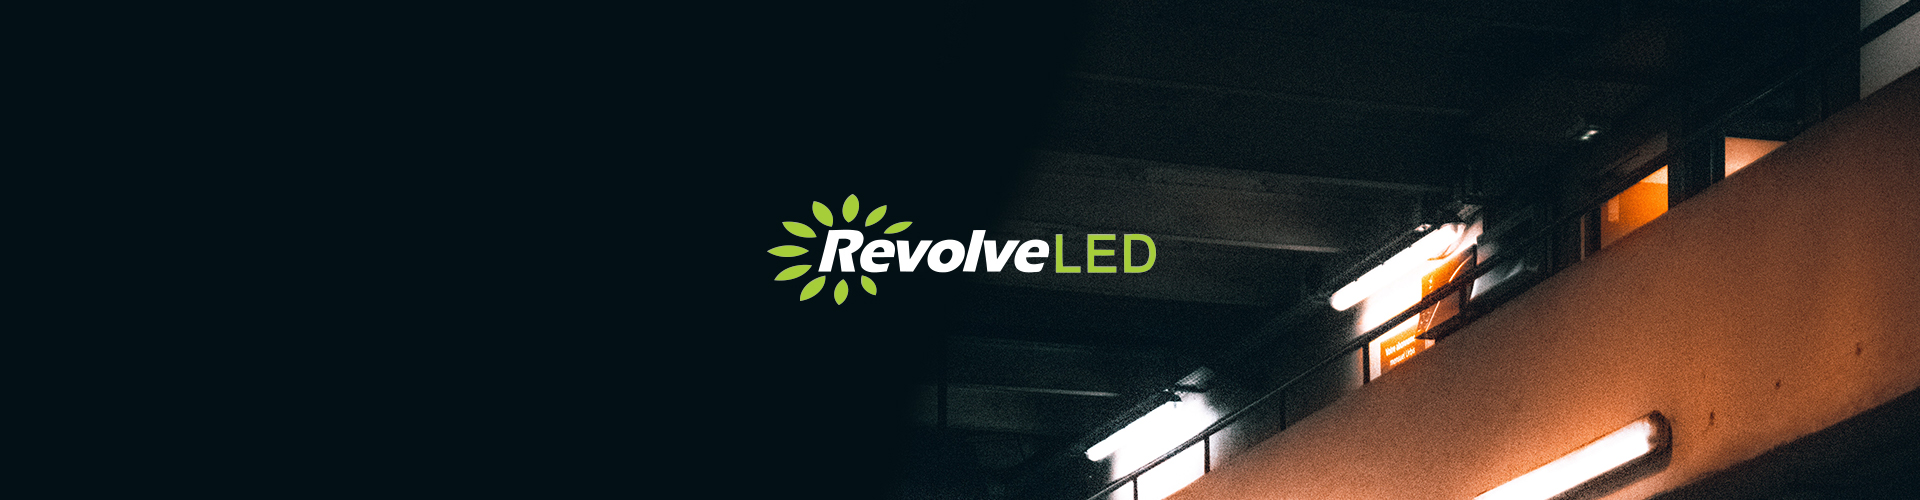 Revolve LED banner